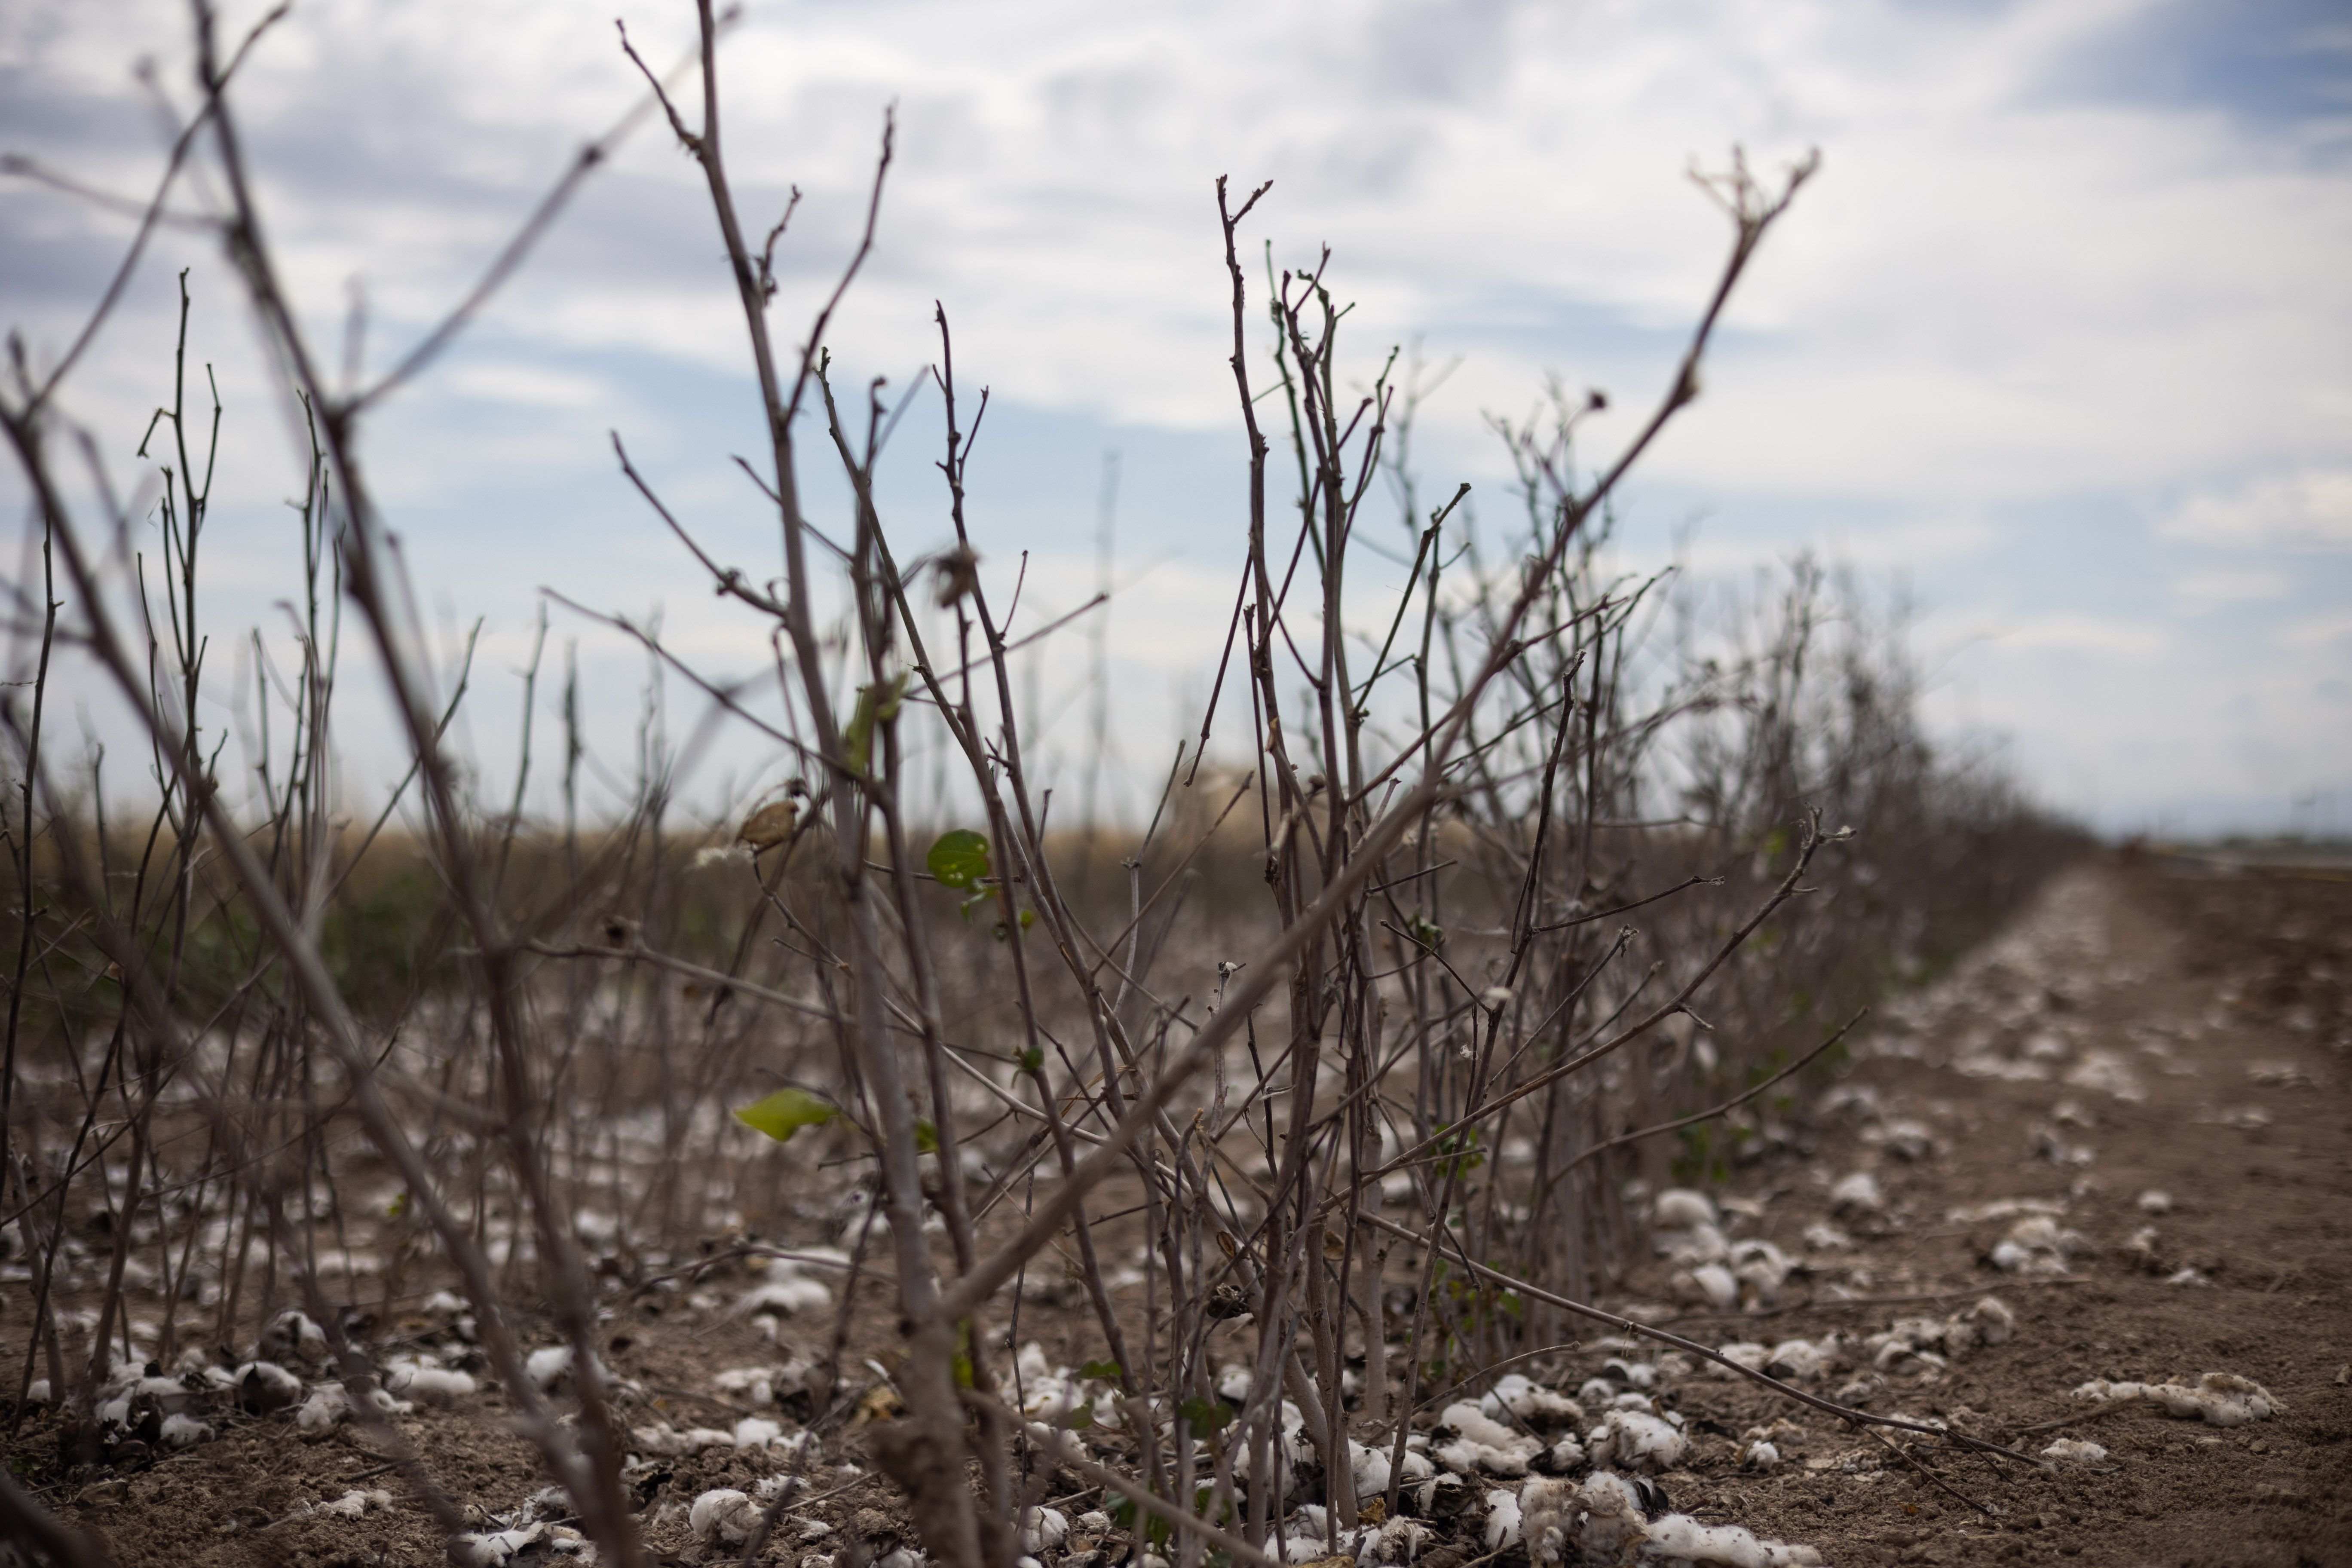 Algodón sembrado en una finca afectado por la sequía.